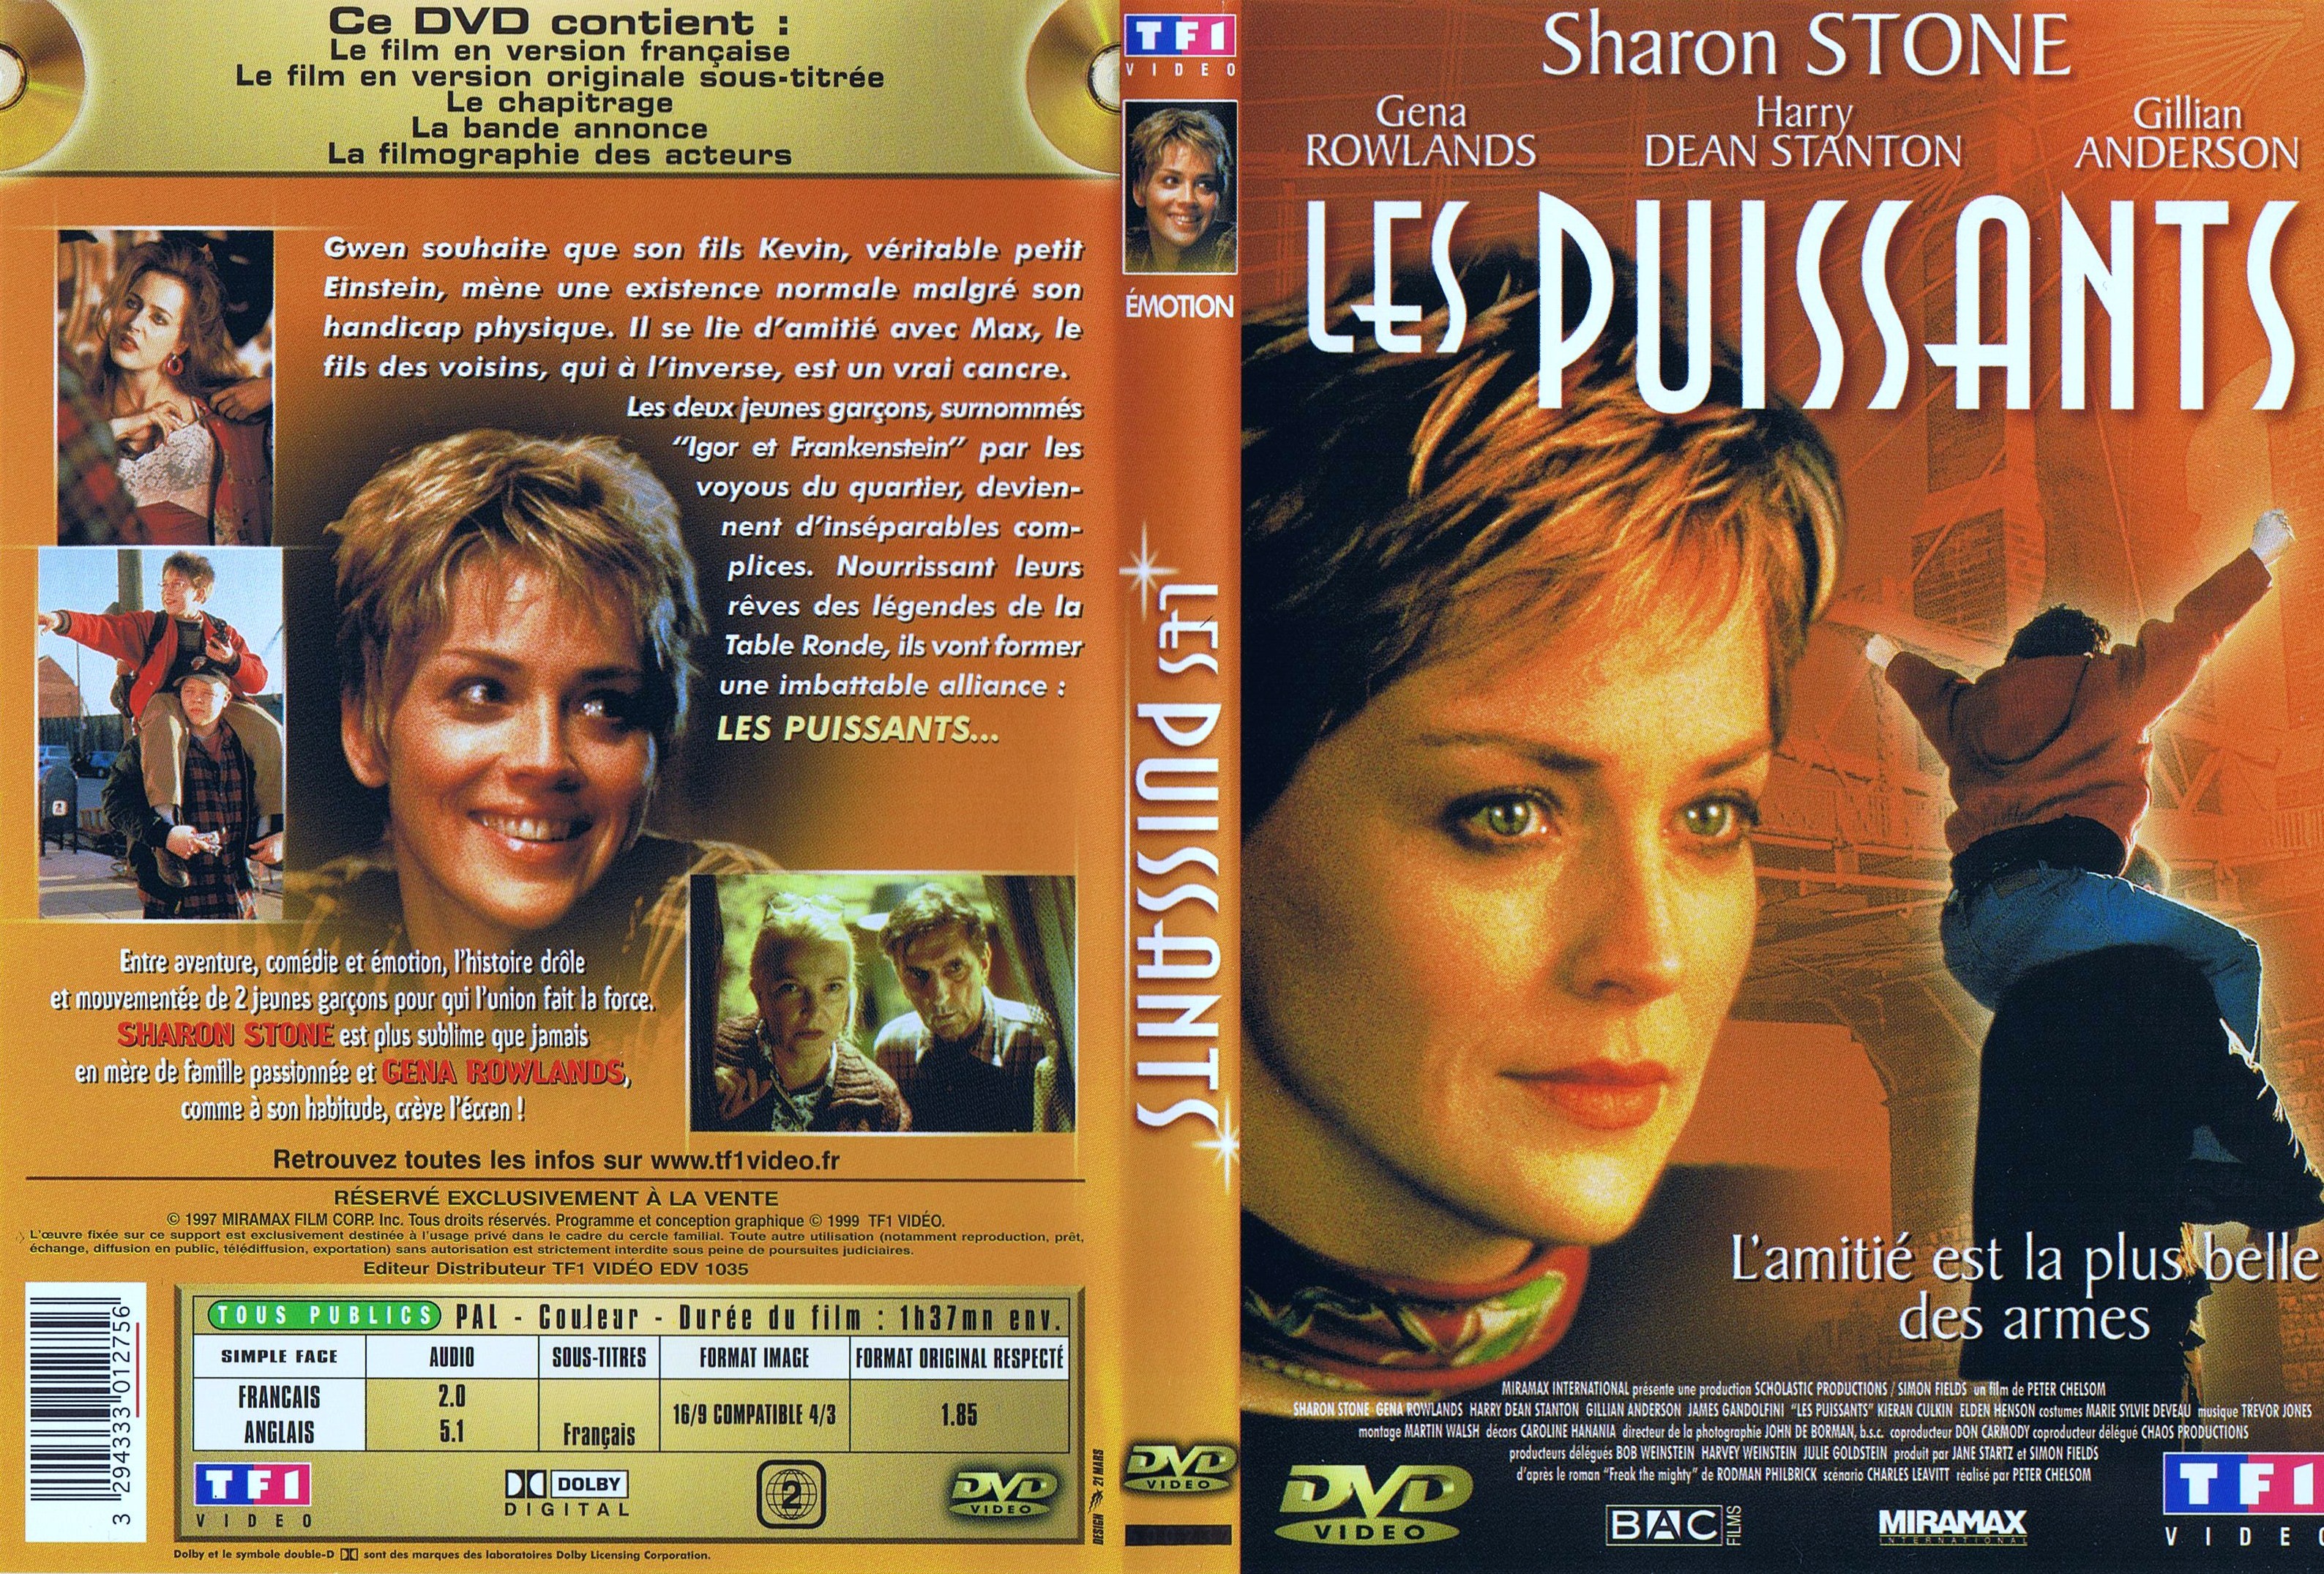 Jaquette DVD de Les puissants - Cinéma Passion